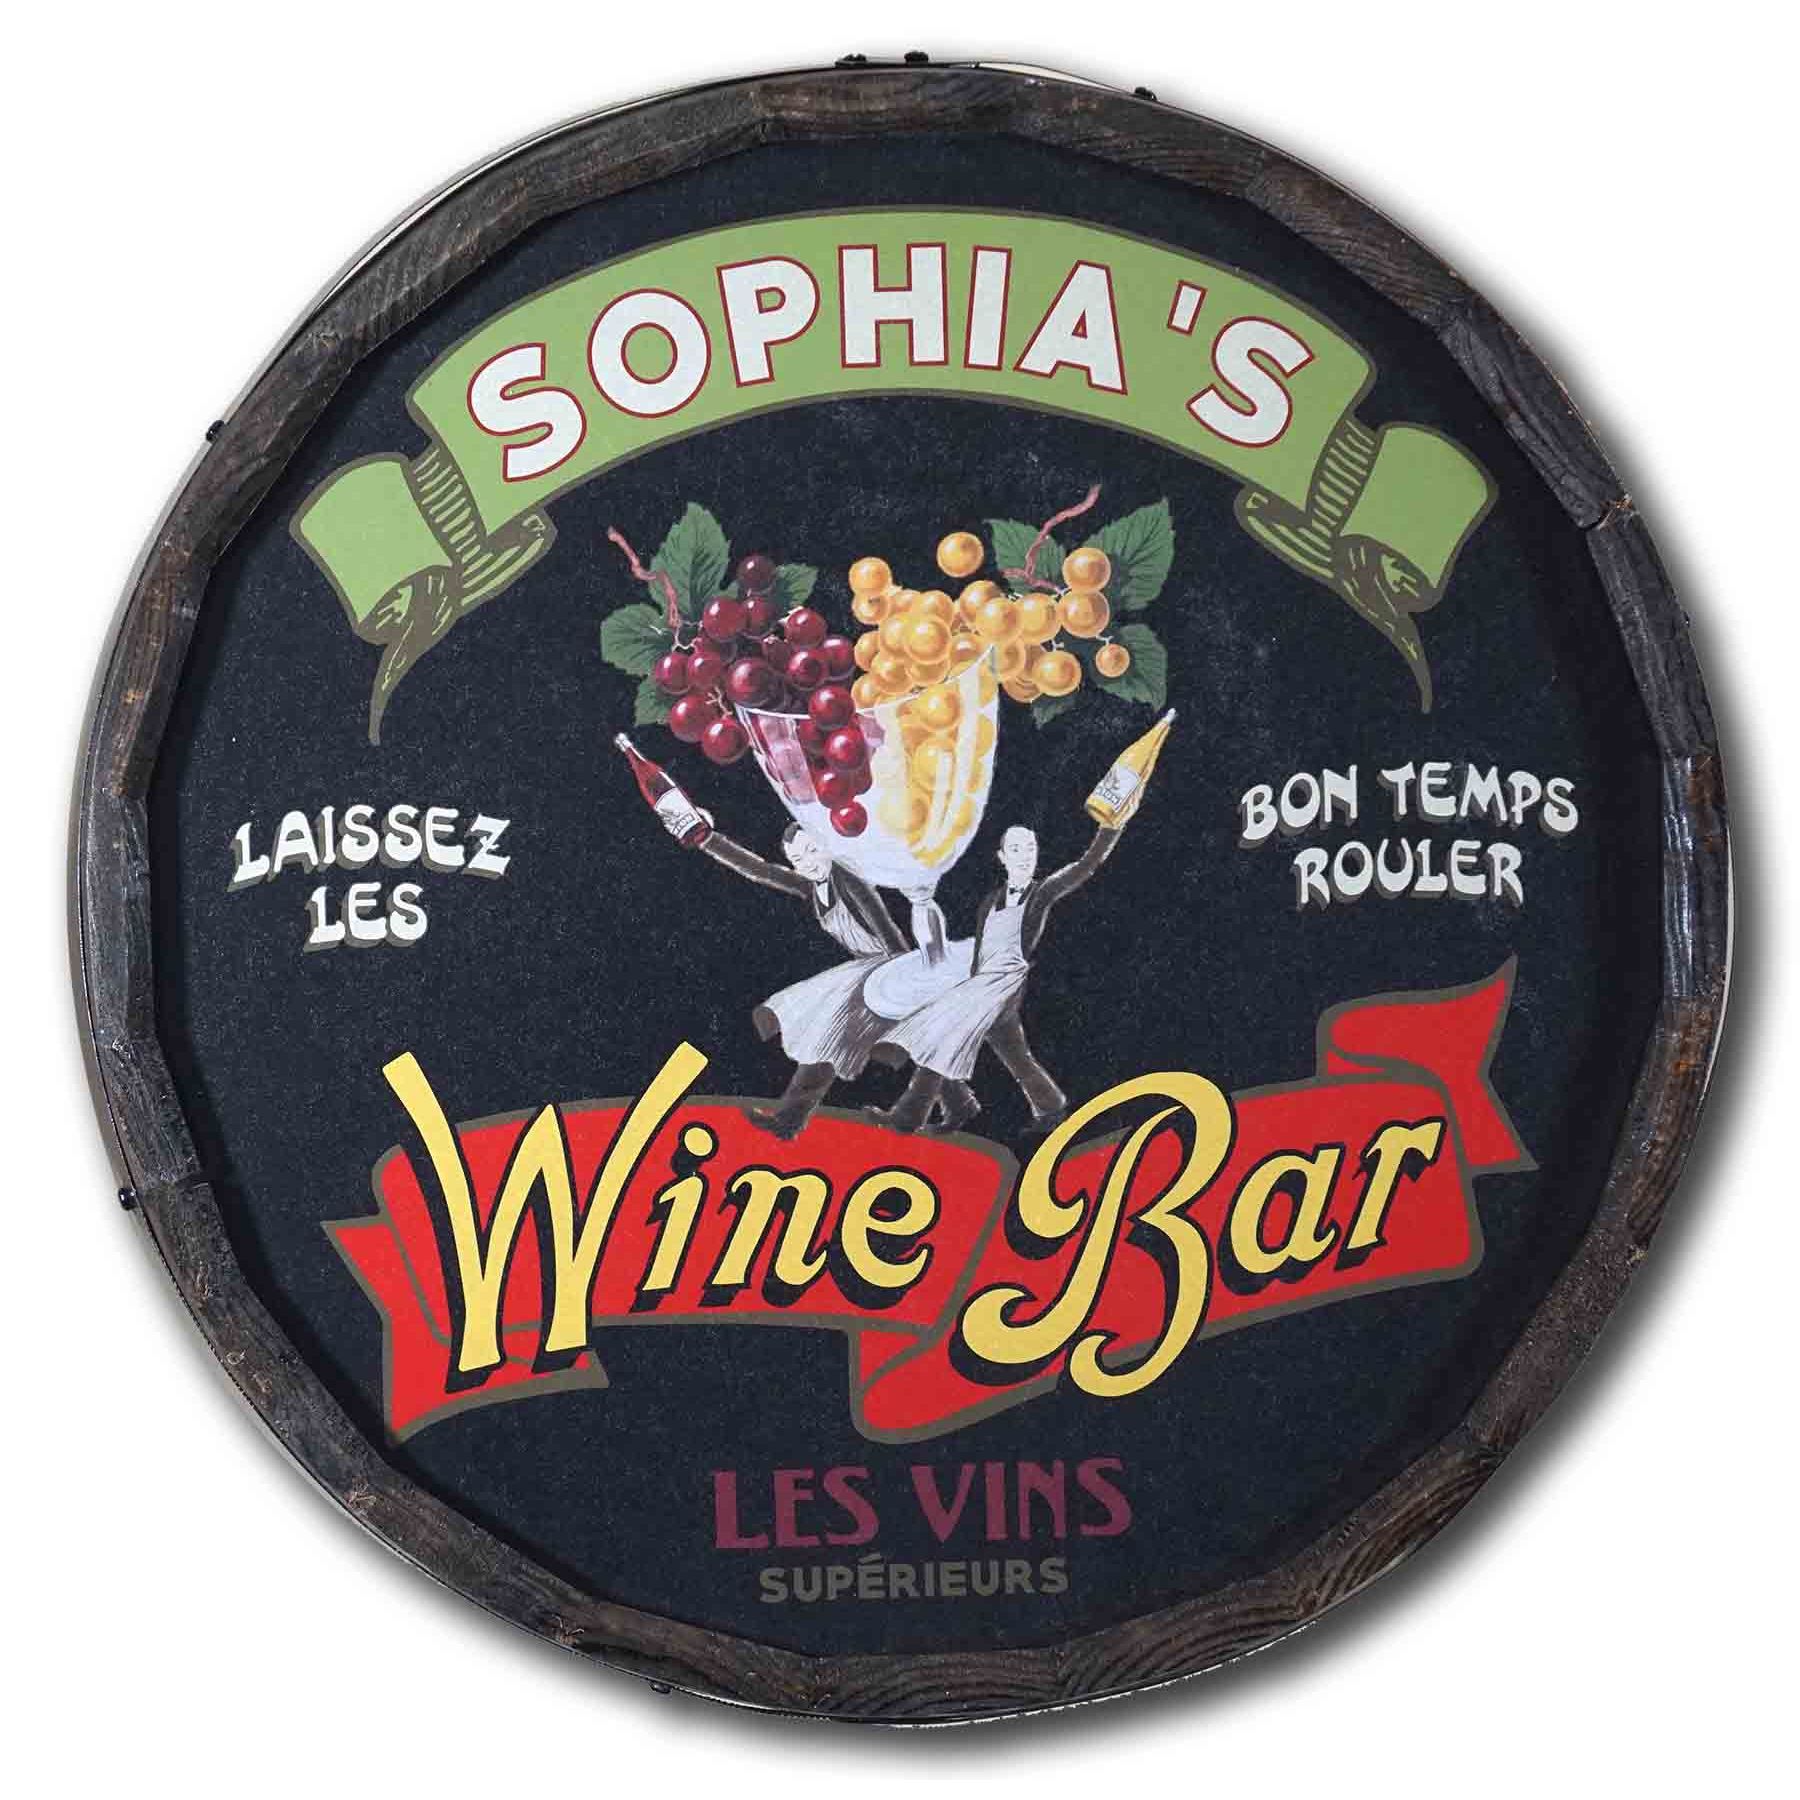 Quarter Barrel Les Vins Wine Bar Sign QB1808